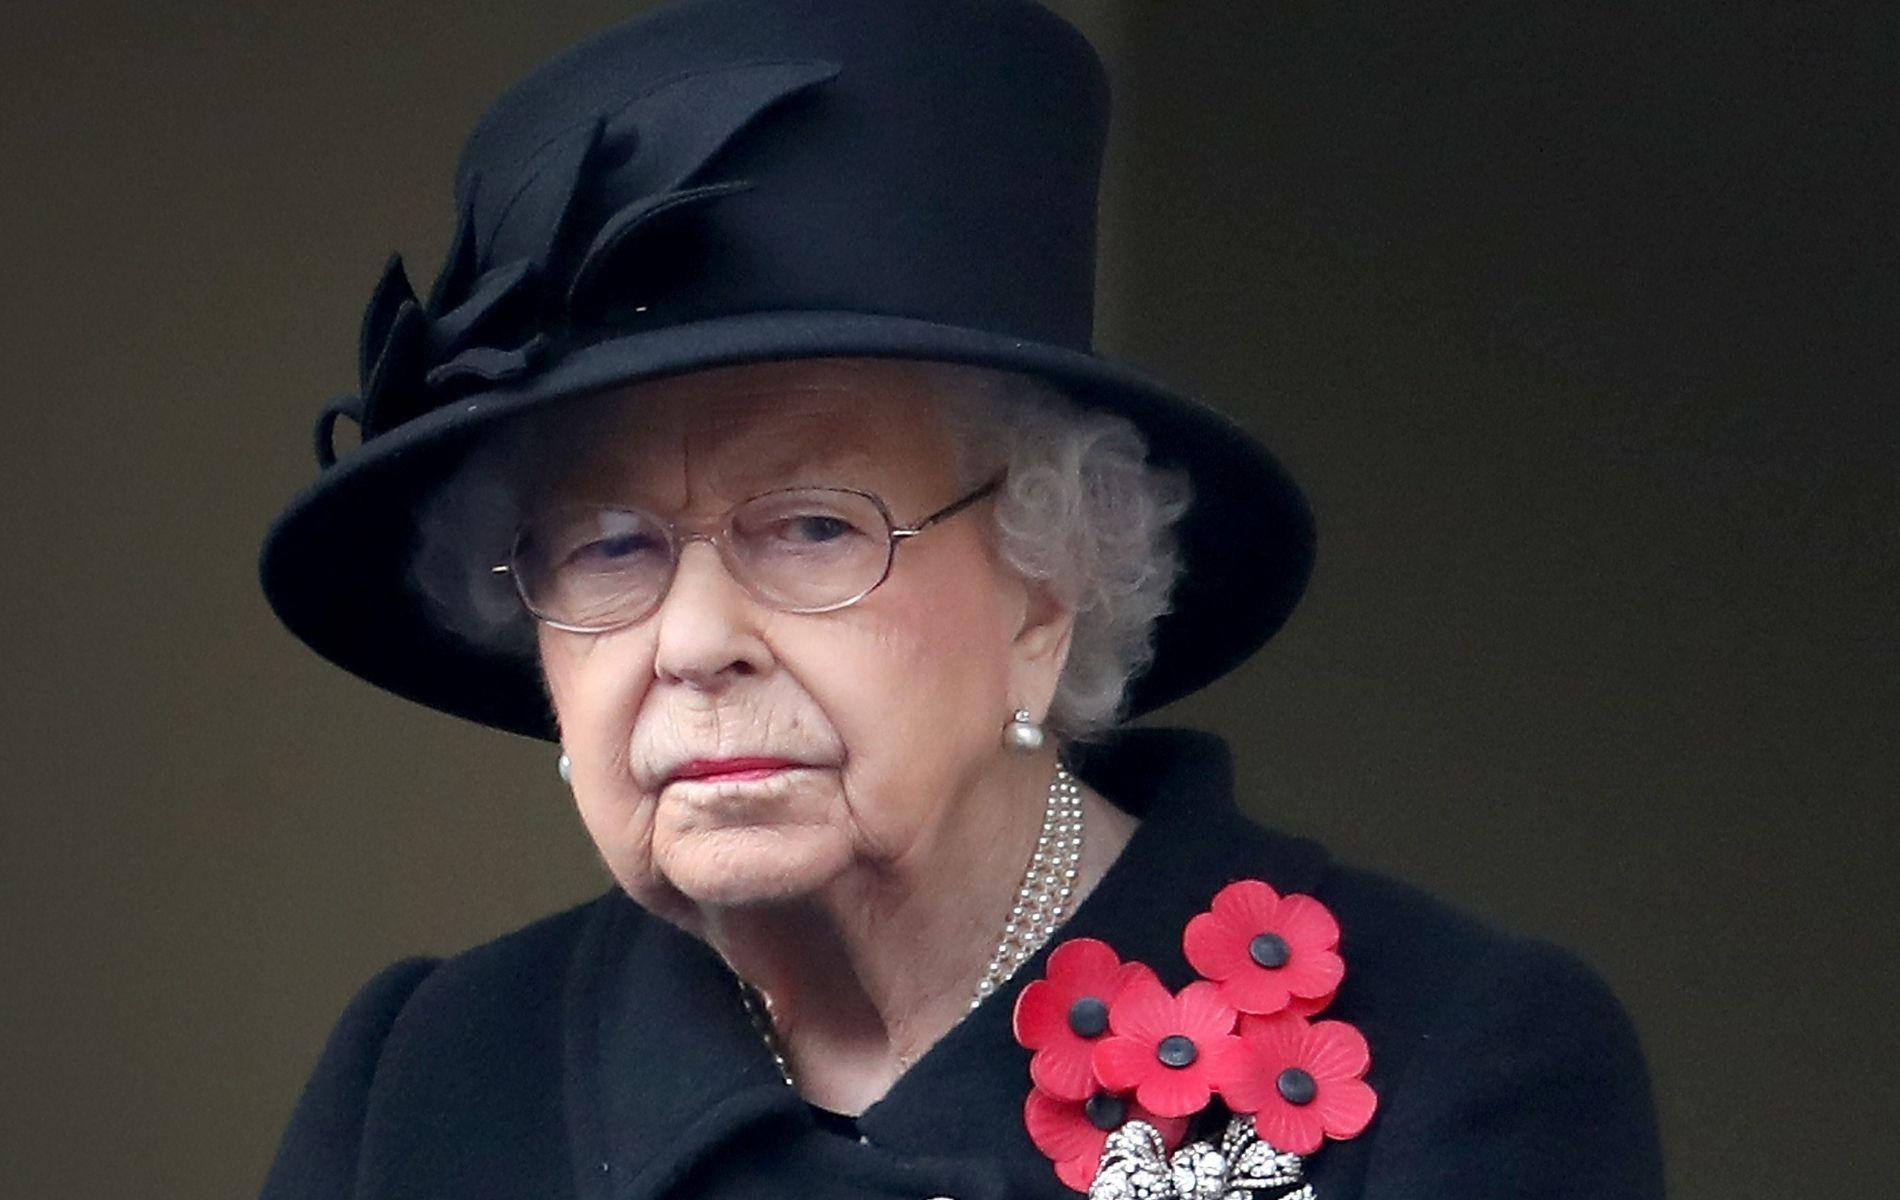 La famille royale face à un nouveau scandale : La reine Elizabeth II vivement critiquée